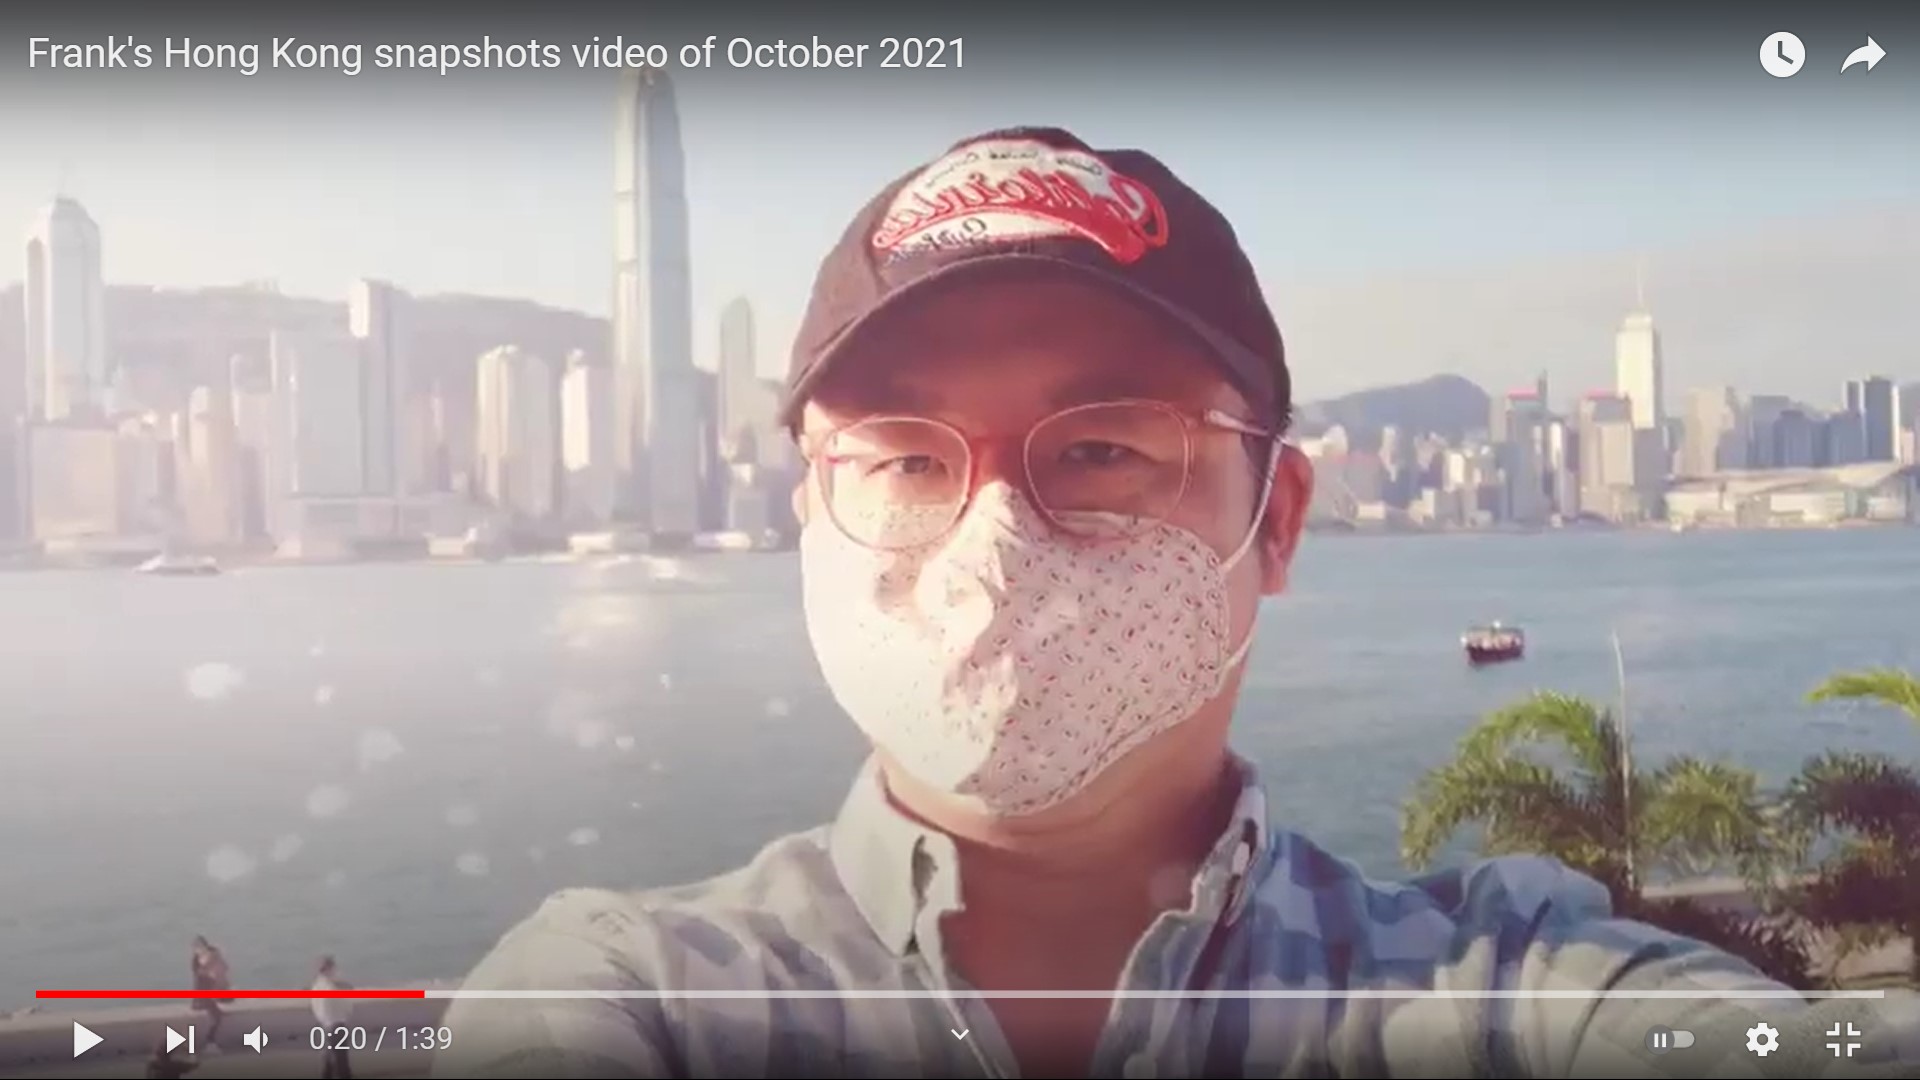 Frank’s Hong Kong snapshots video of October 2021